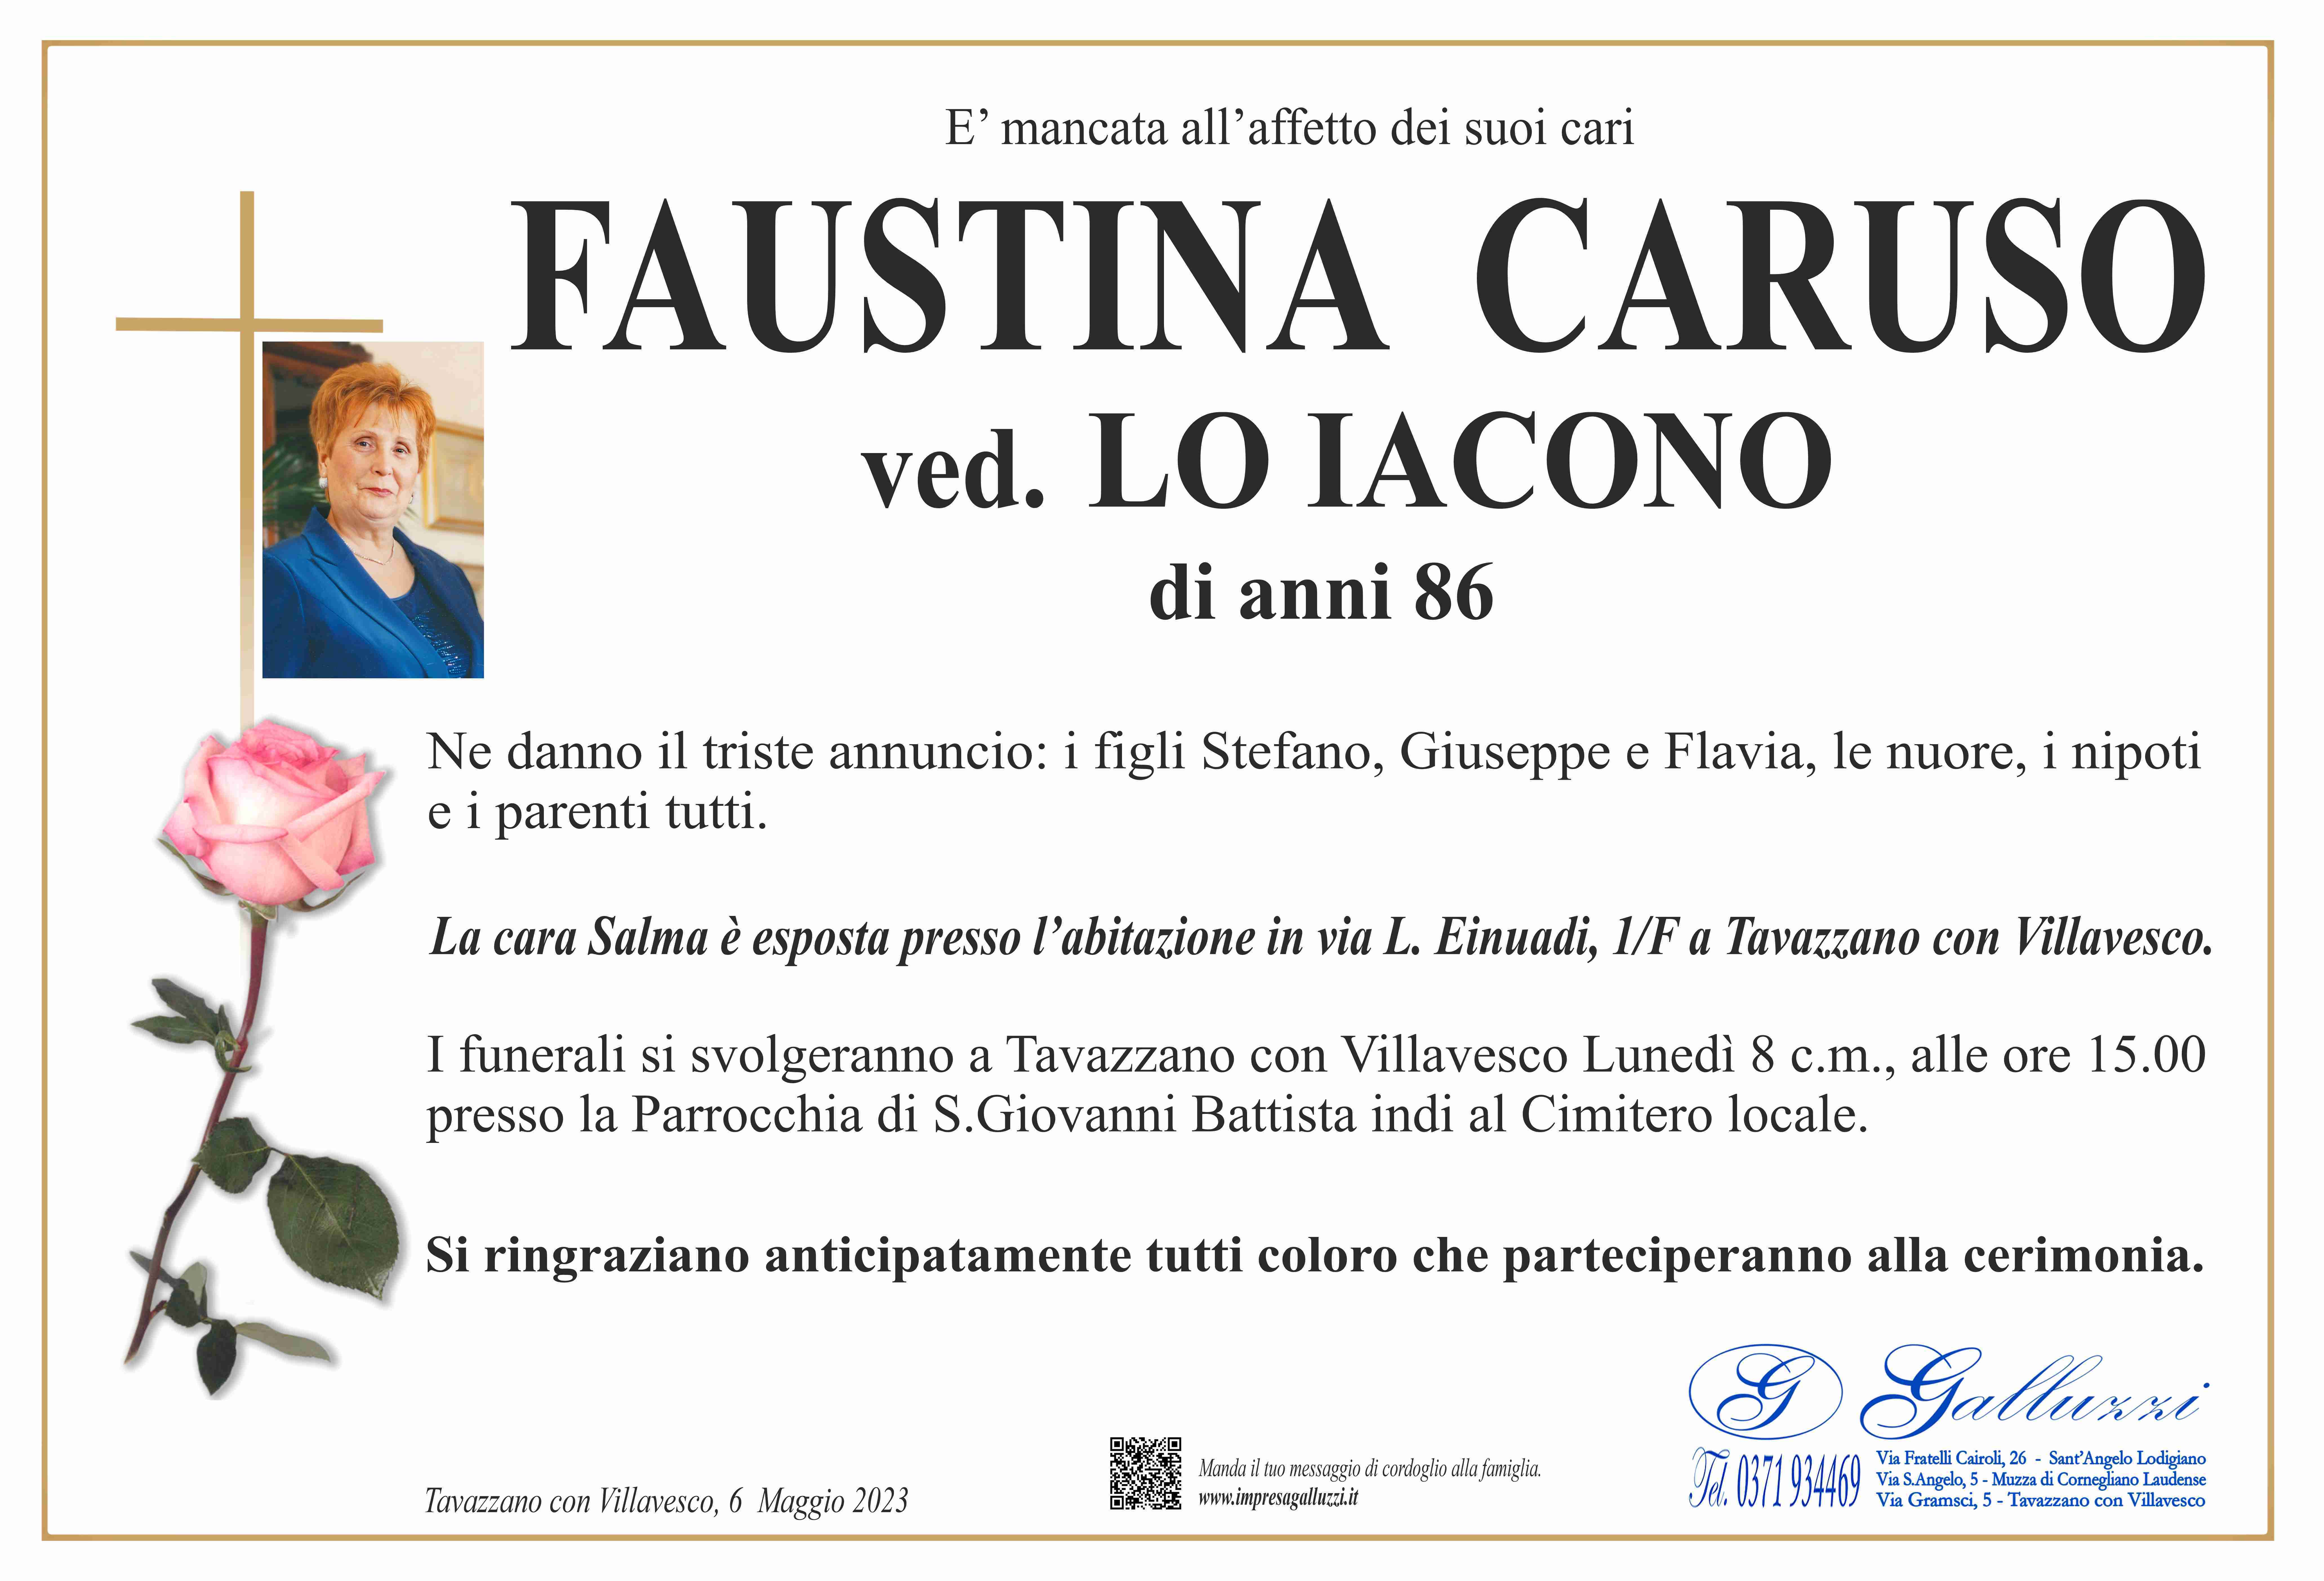 Faustina Caruso